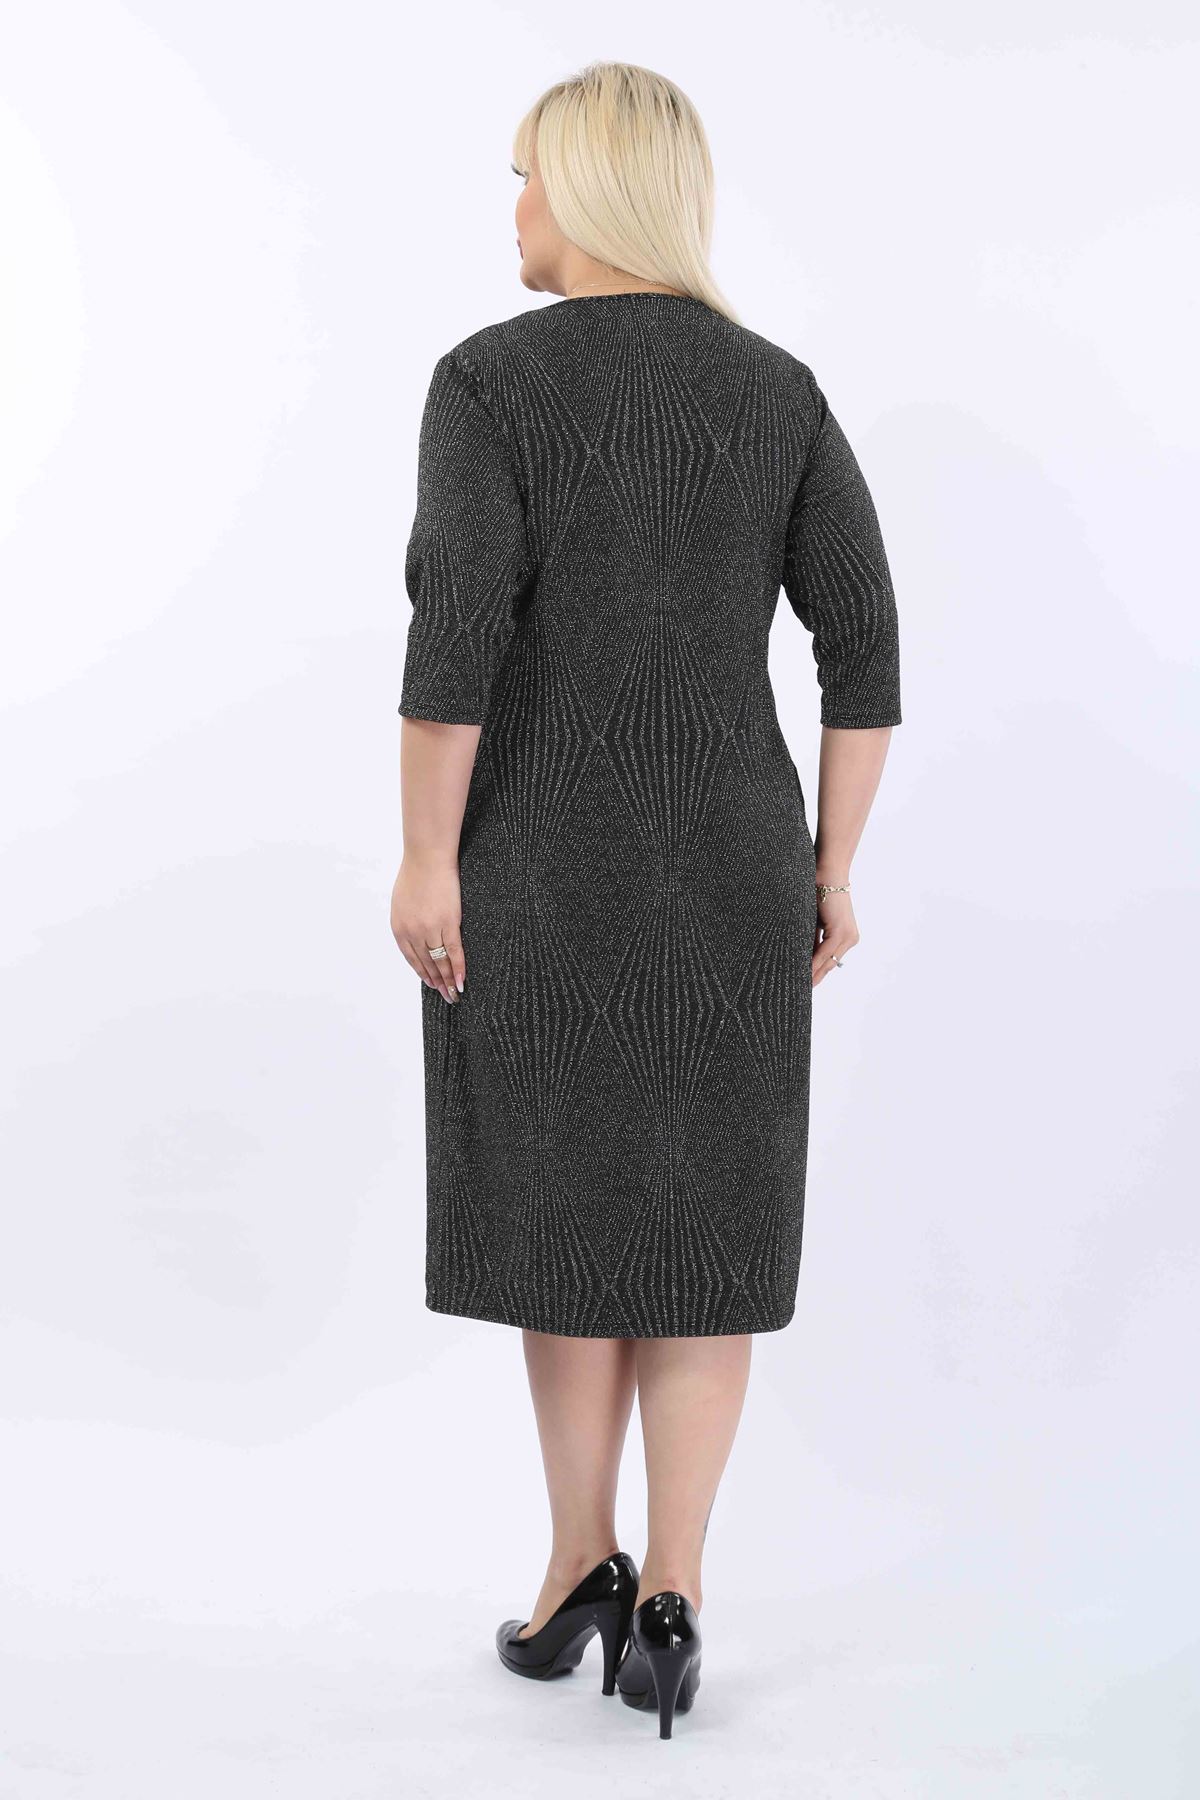 Jakarlı Cepli Kışlık Büyük Beden Elbise 30A-2025